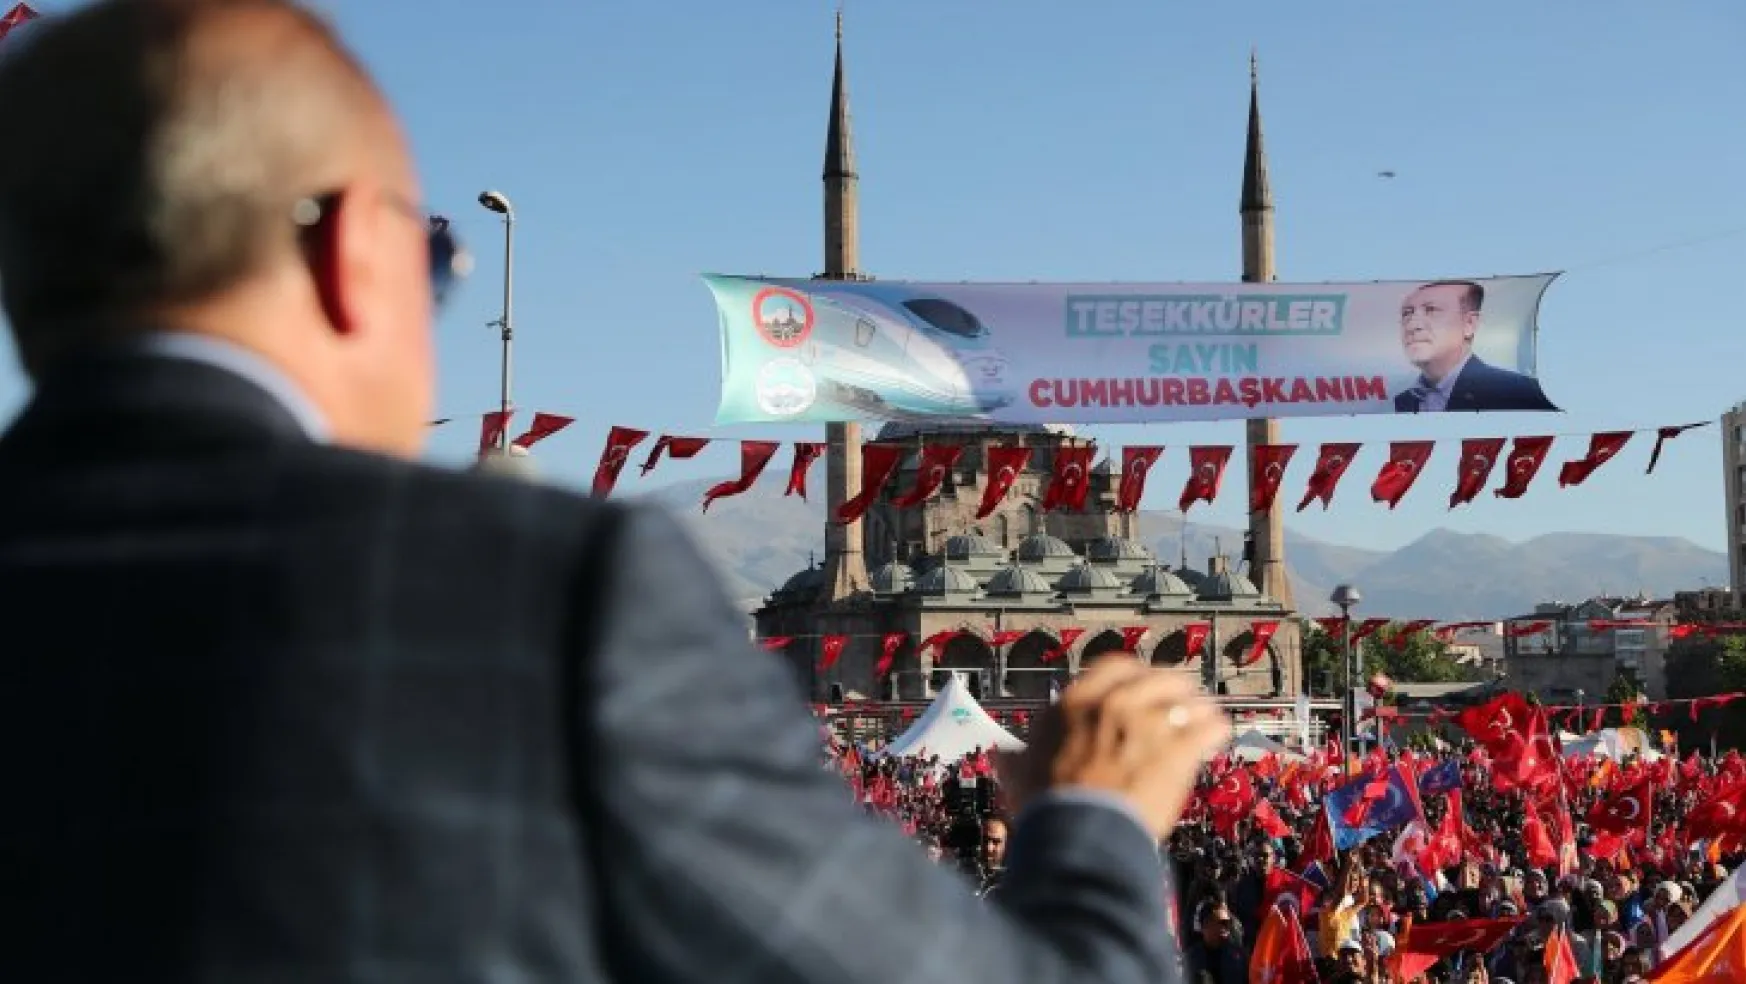 Cumhurbaşkanı Erdoğan, Kayseri'den memnun ayrıldı